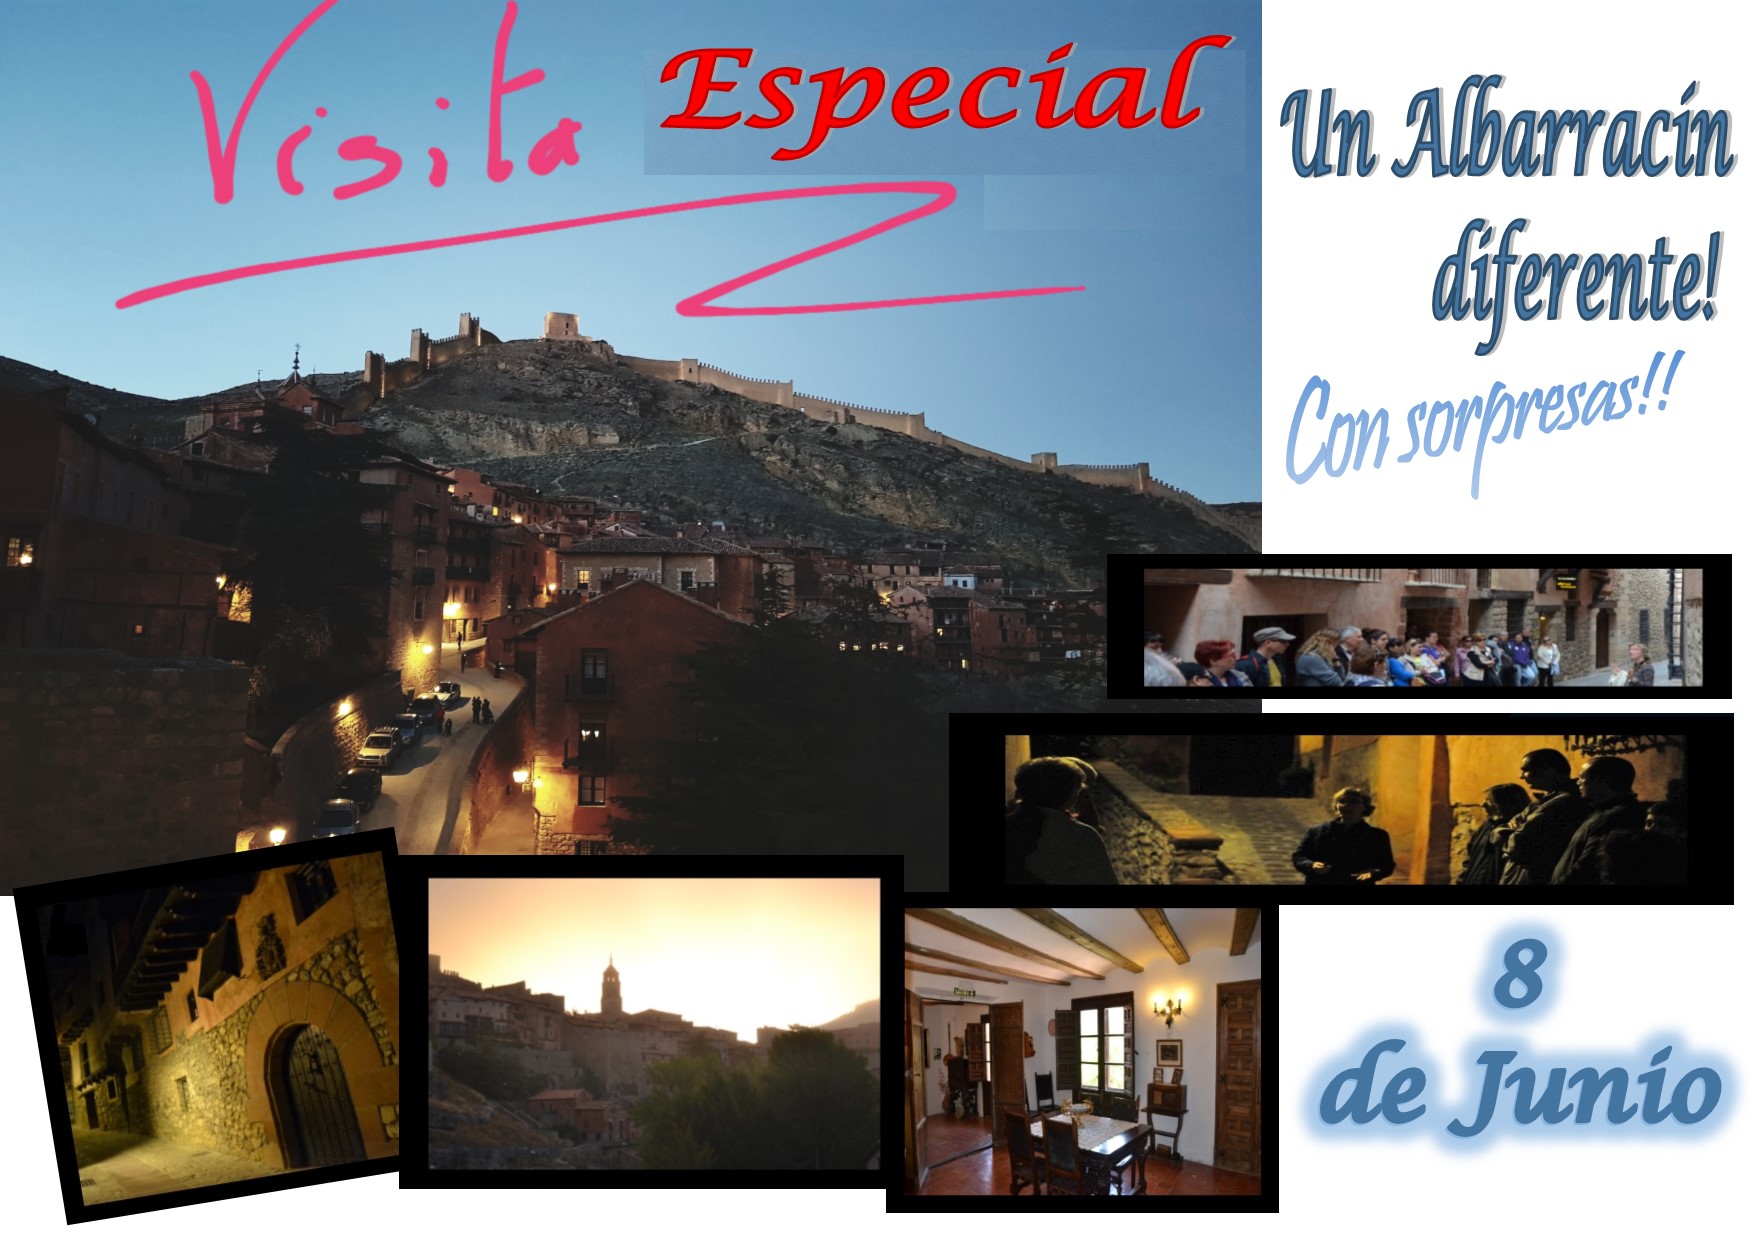 Este Sábado 8 de Junio… Albarracín Especial con Sorpresas! Te esperamos!